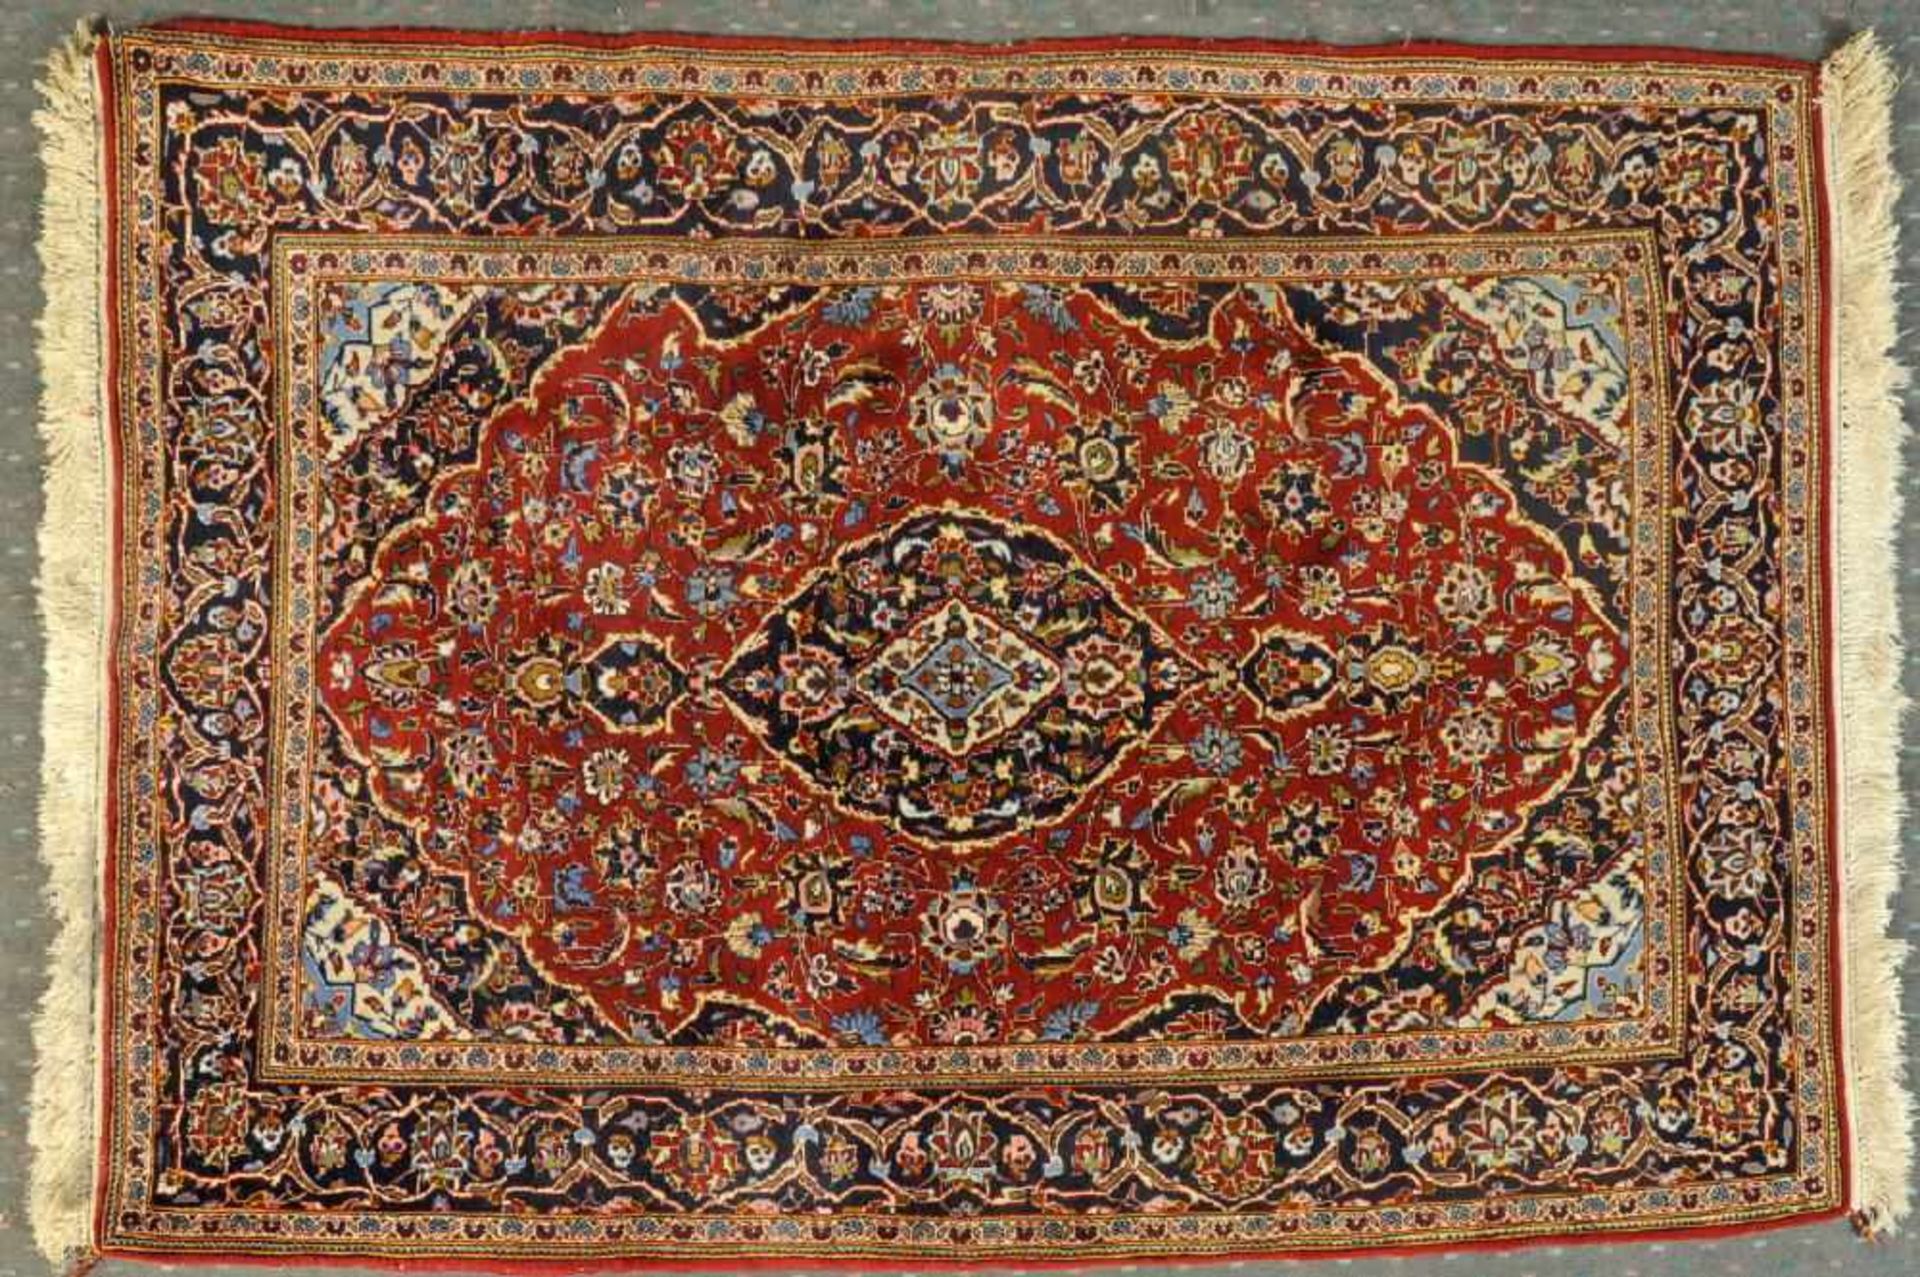 Keschan, Persien, 112 x 173 cmWolle, rotgrundig, mehrfarb. Mittelstück, umgeben von floralen